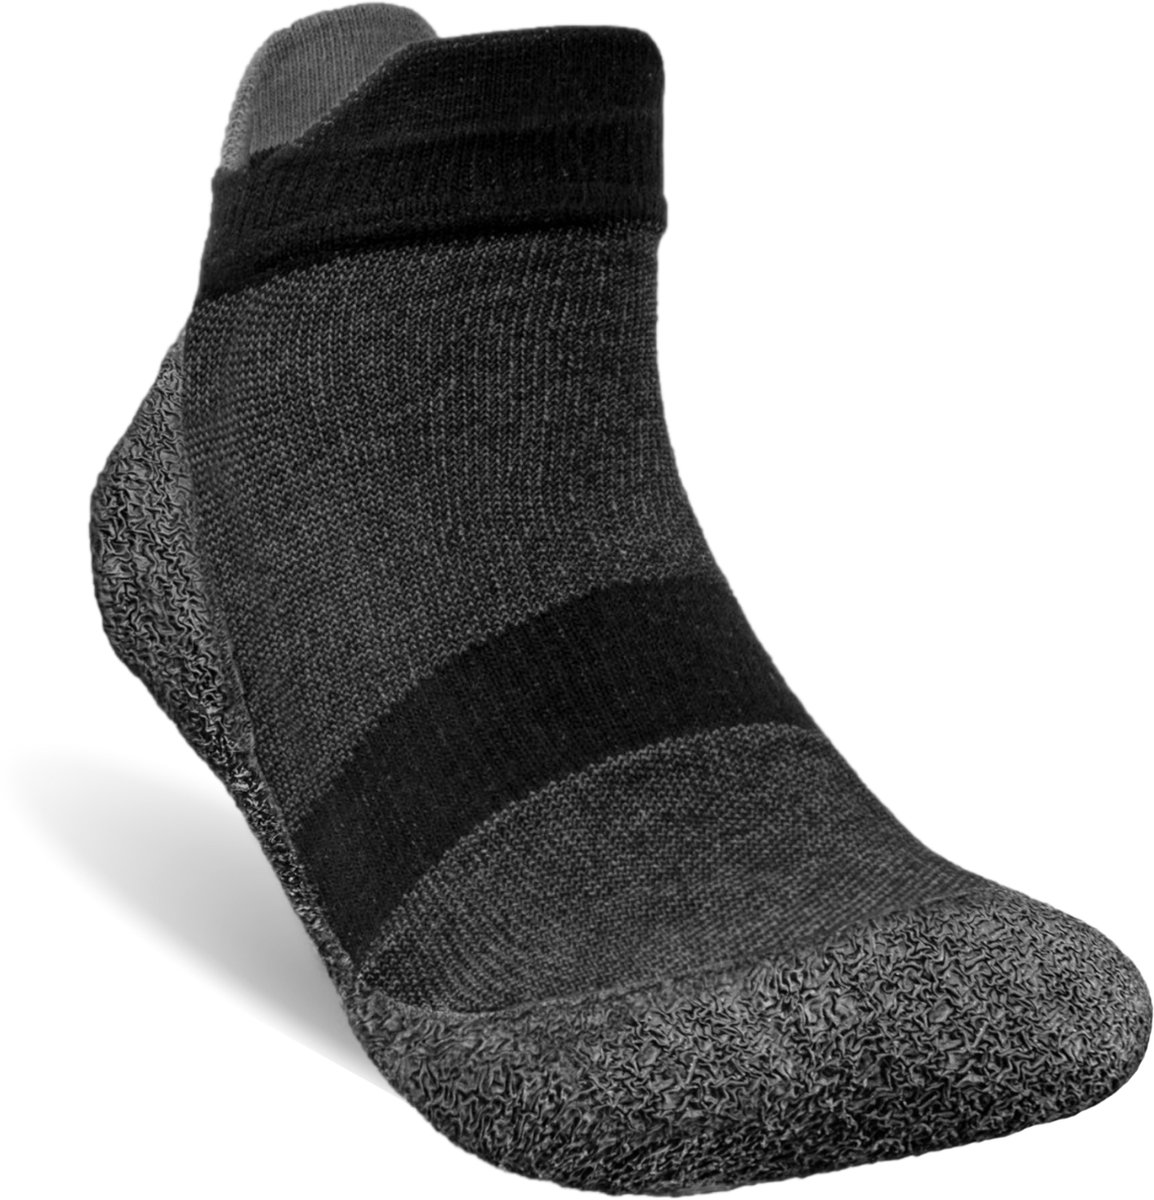 Baresocks 2.0 - Barefoot sokschoen maat S